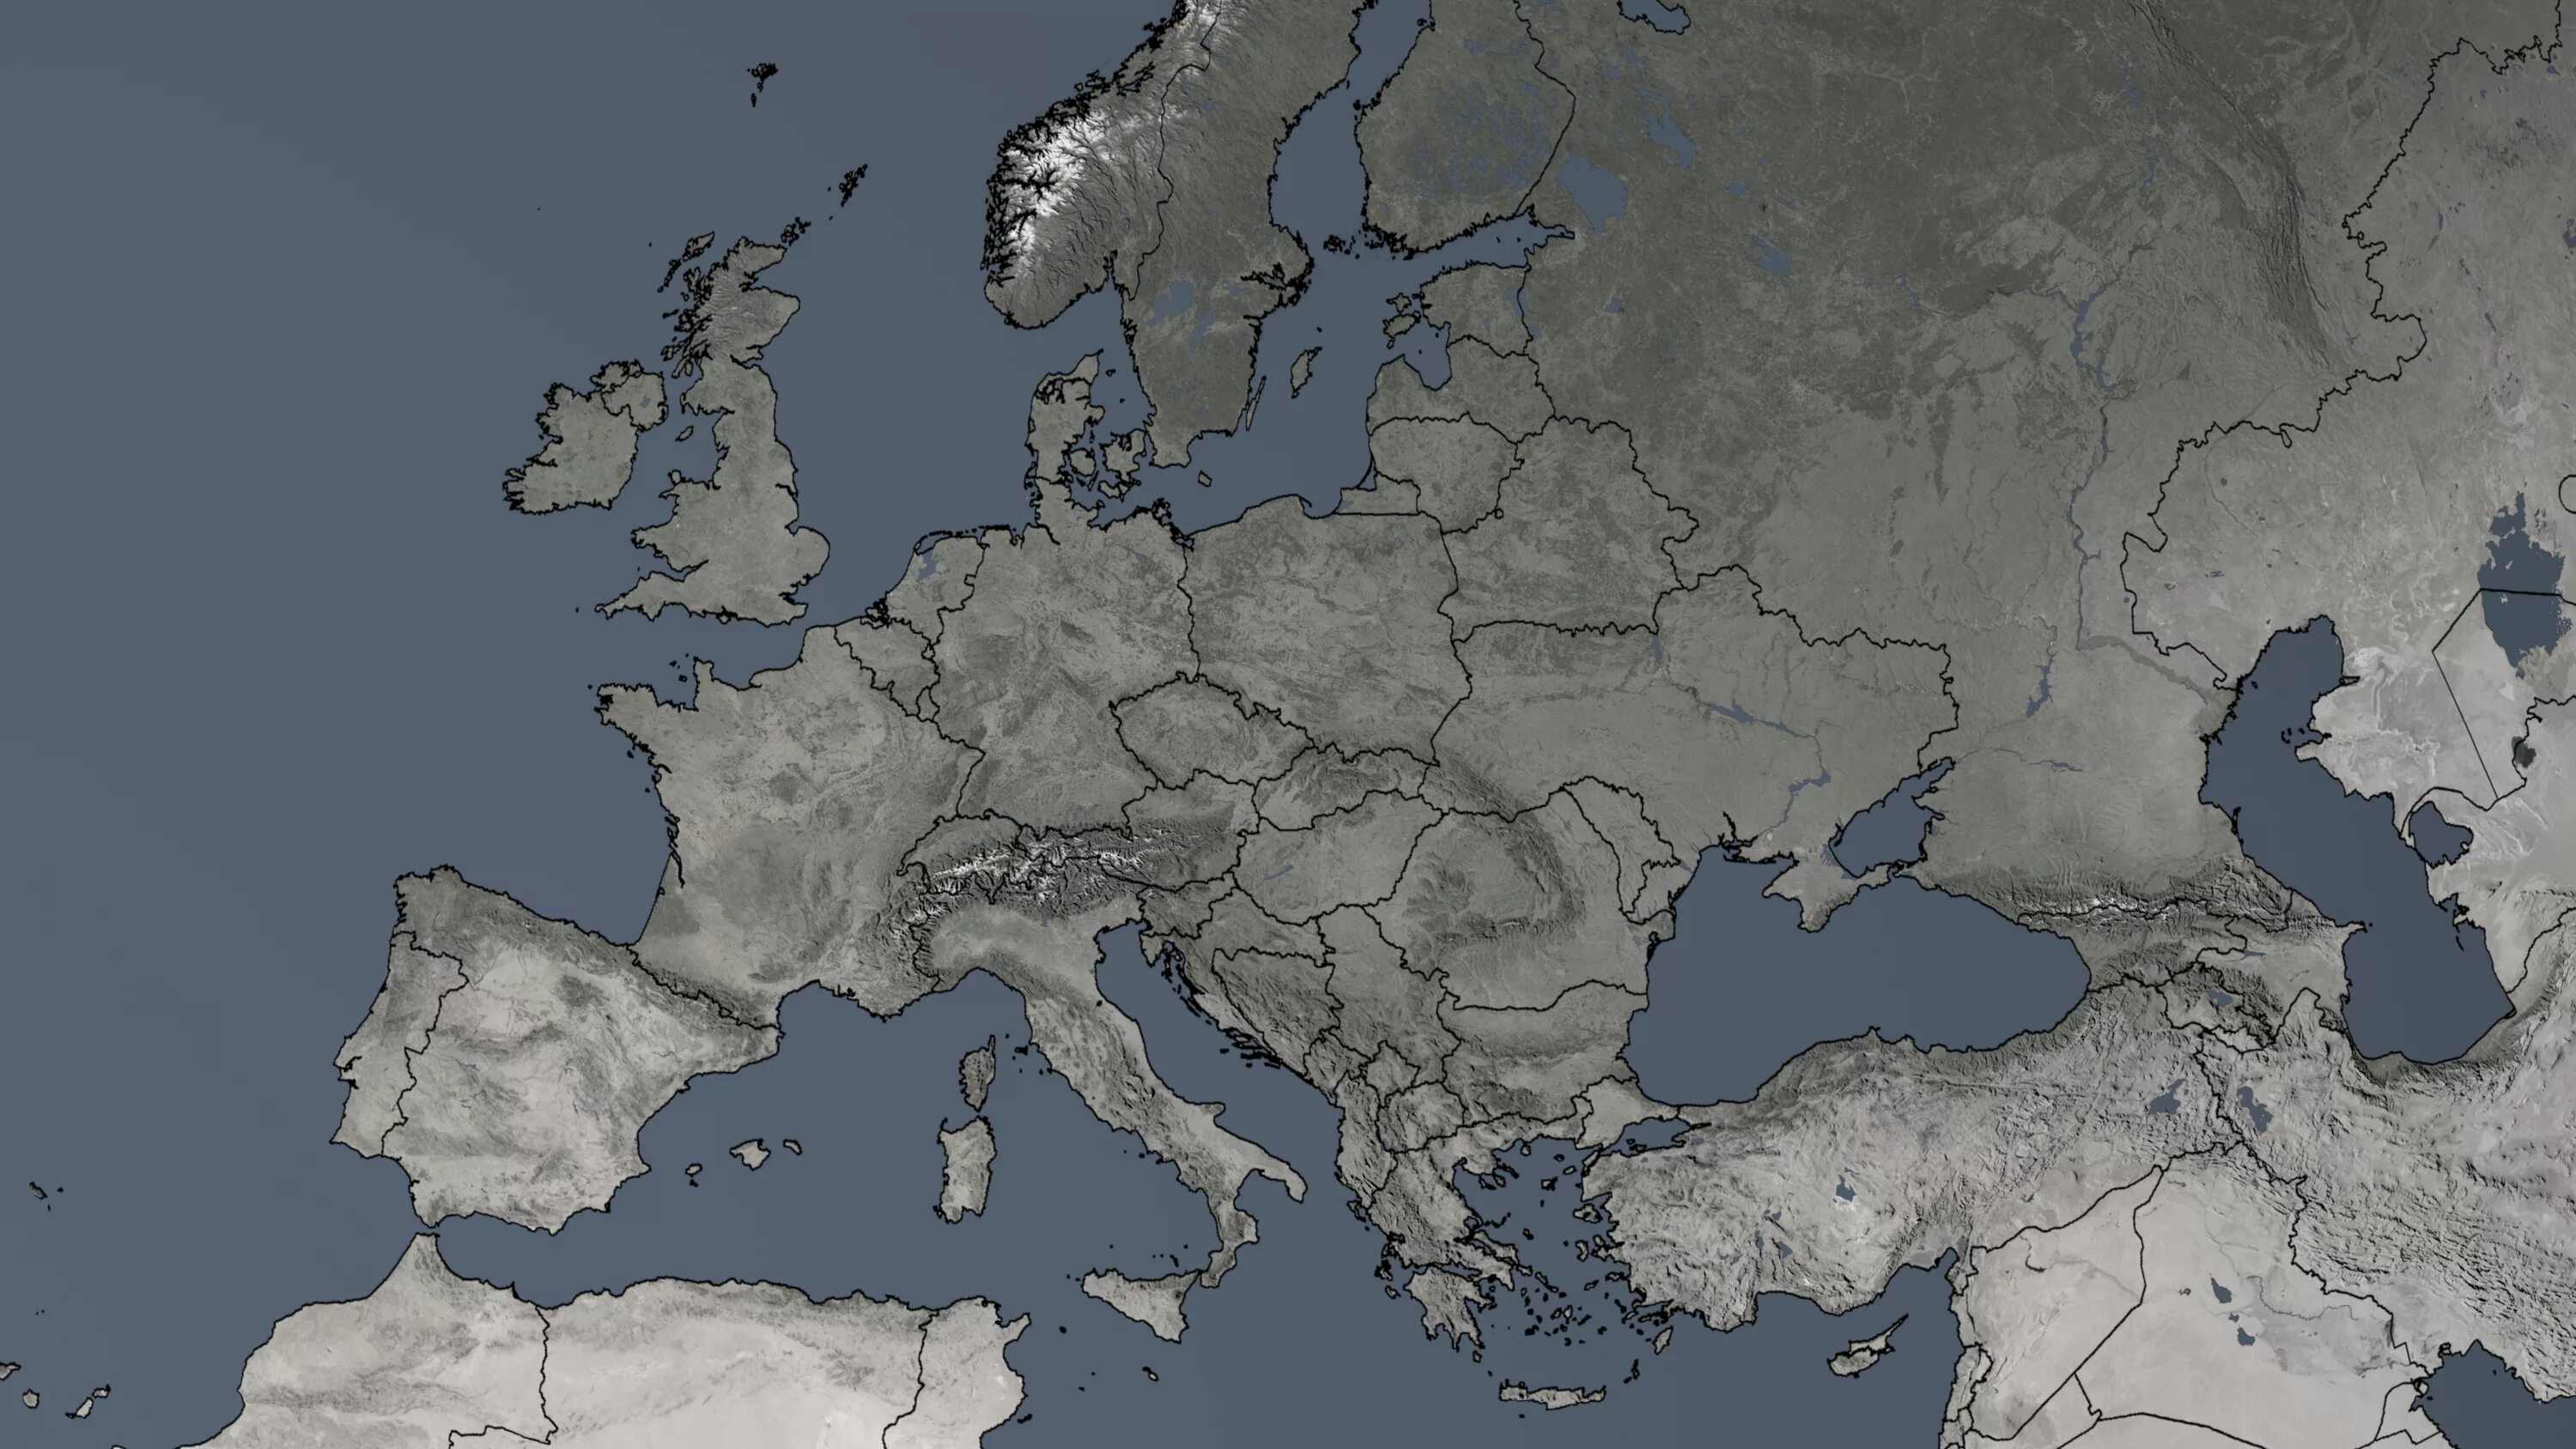 Europa und. Карта - Европа. Карта Европы серая. Карта Европы с границами стран. Политическая карта Европы.